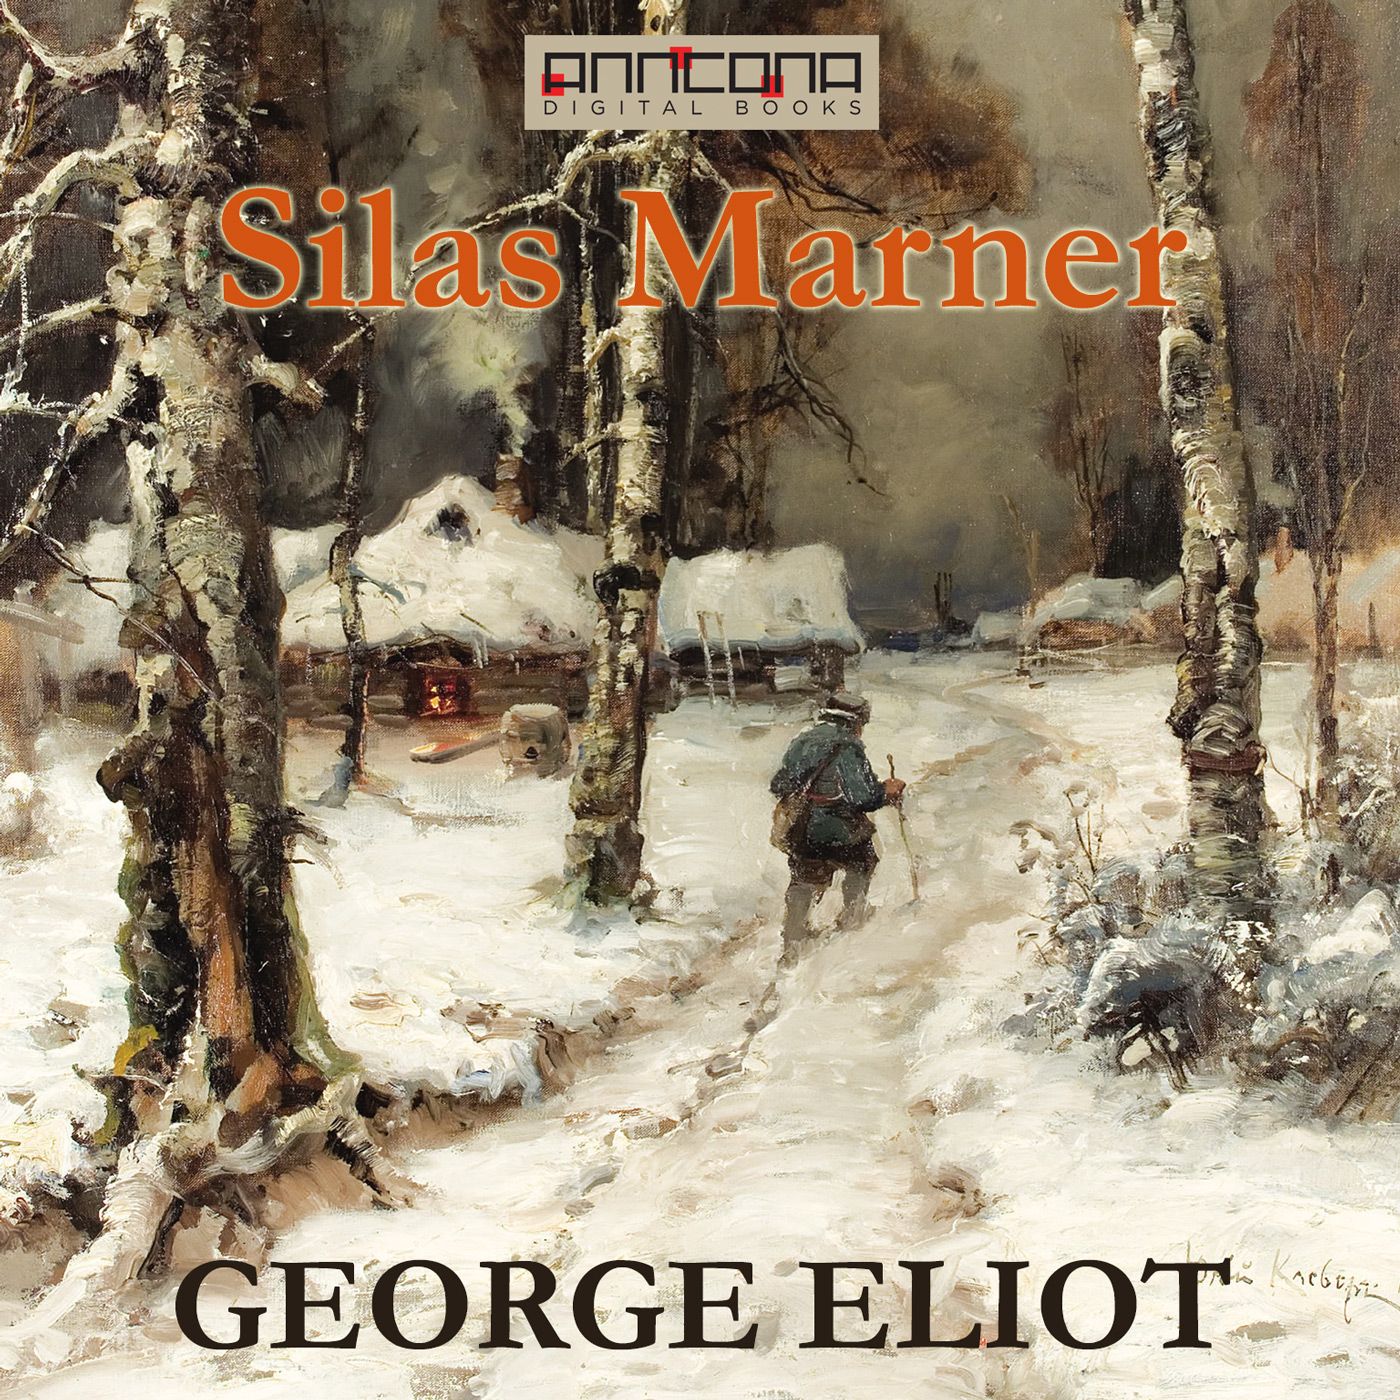 Silas Marner, ljudbok av George Eliot